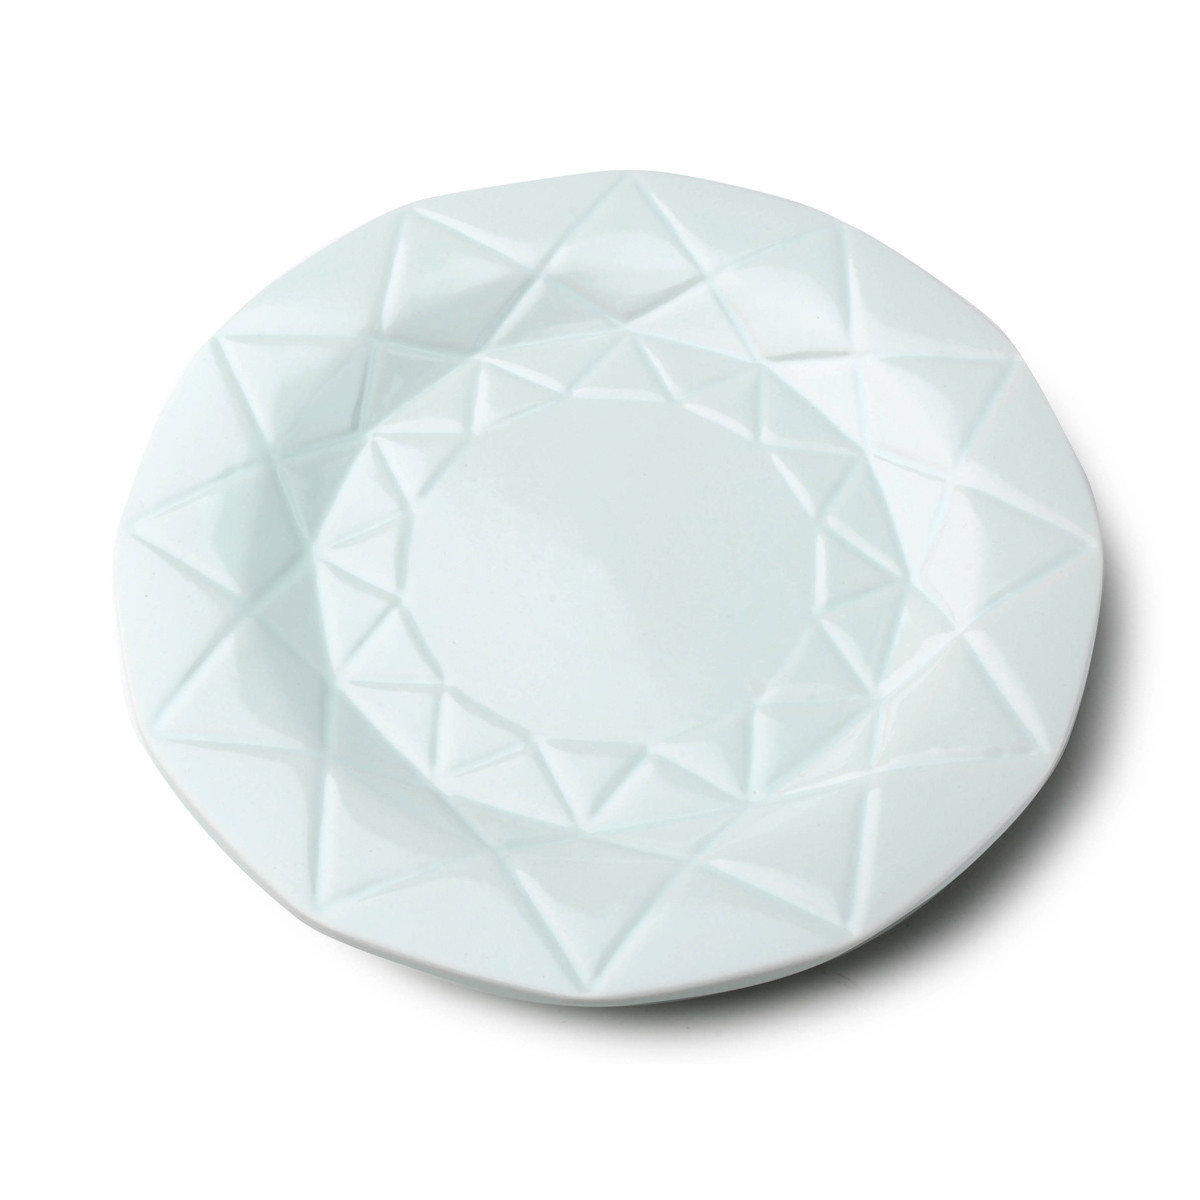 Affek Design Ceramiczny Talerz Obiadowy Okrągły Miętowy Adel marki